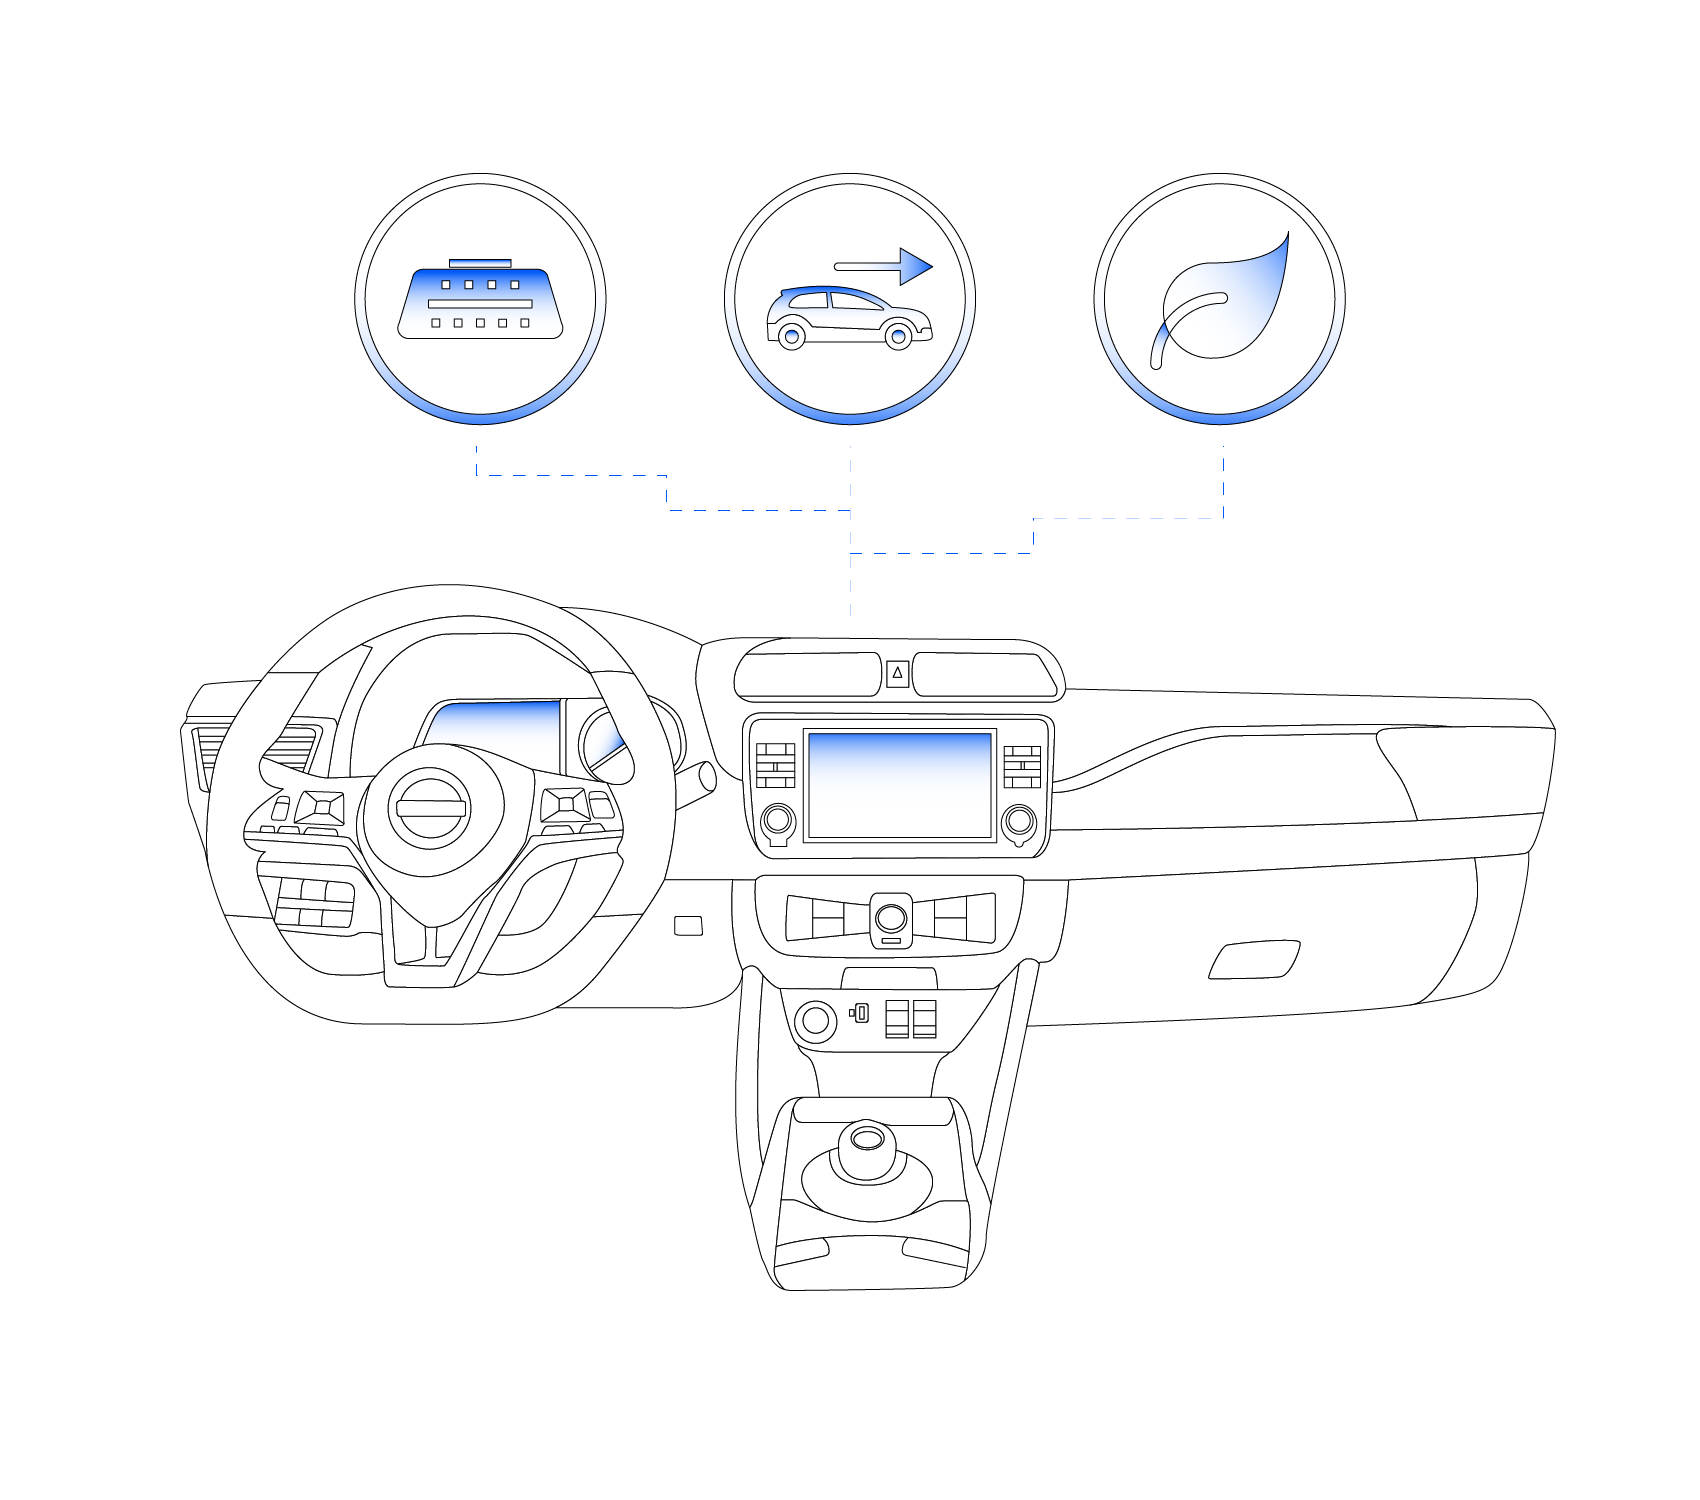 Nissan Leaf OBD-II (CAN bus) communication